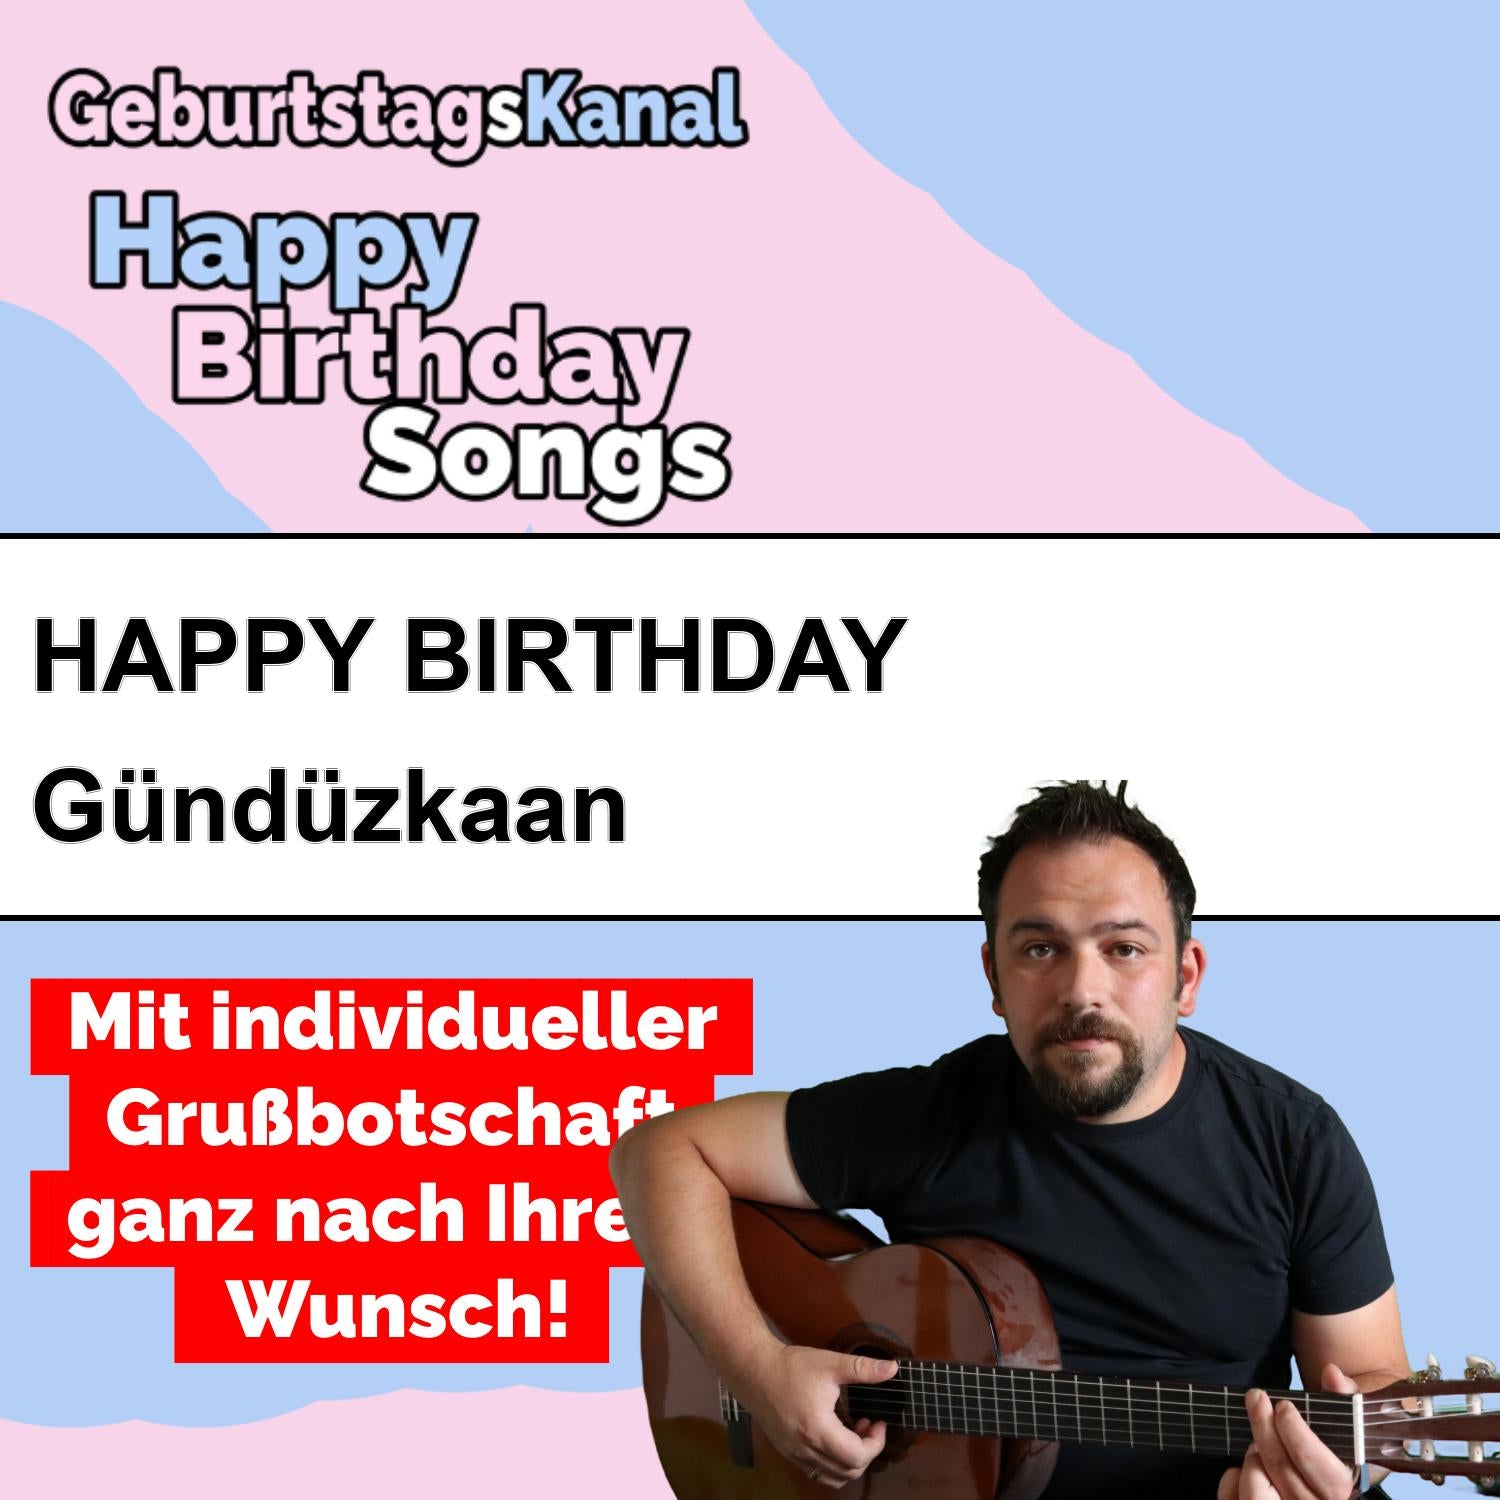 Produktbild Happy Birthday to you Gündüzkaan mit Wunschgrußbotschaft